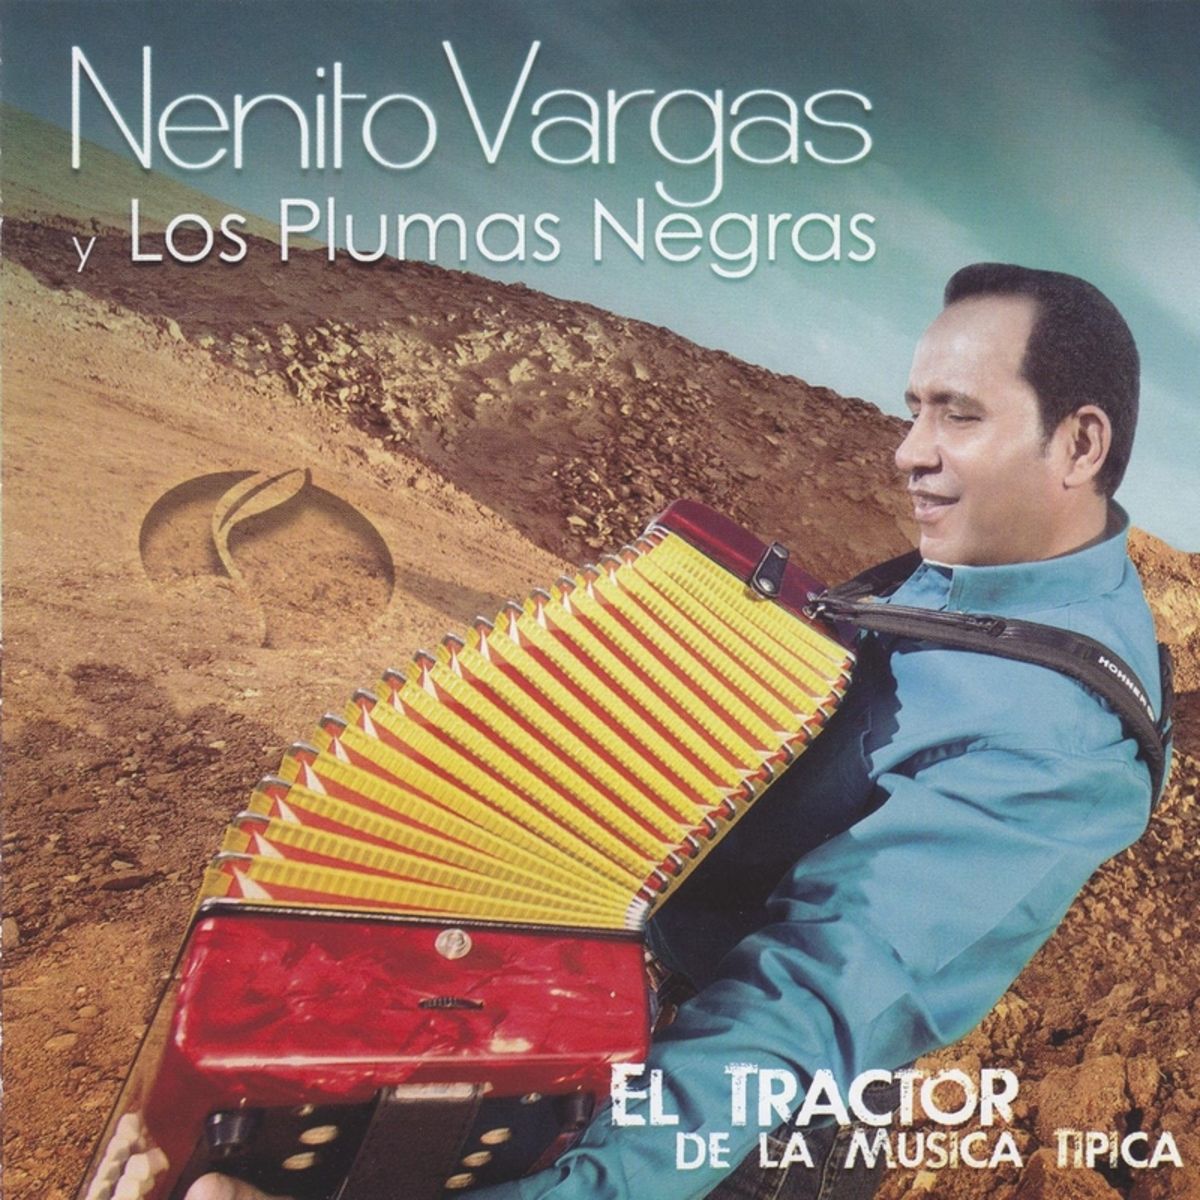 1 - Nenito Vargas y los Plumas Negras - Te Ame de Mas.mp3